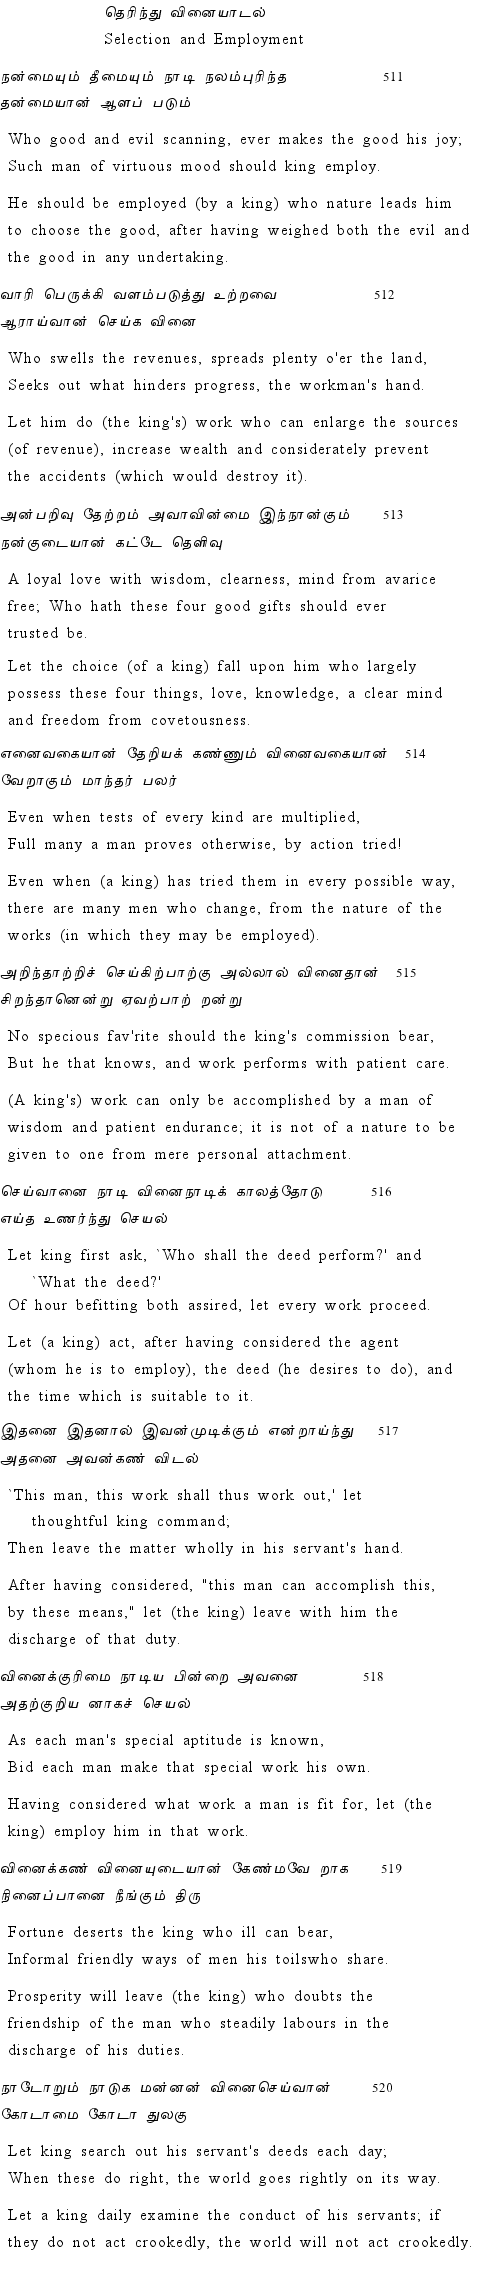 Text of Adhikaram 52